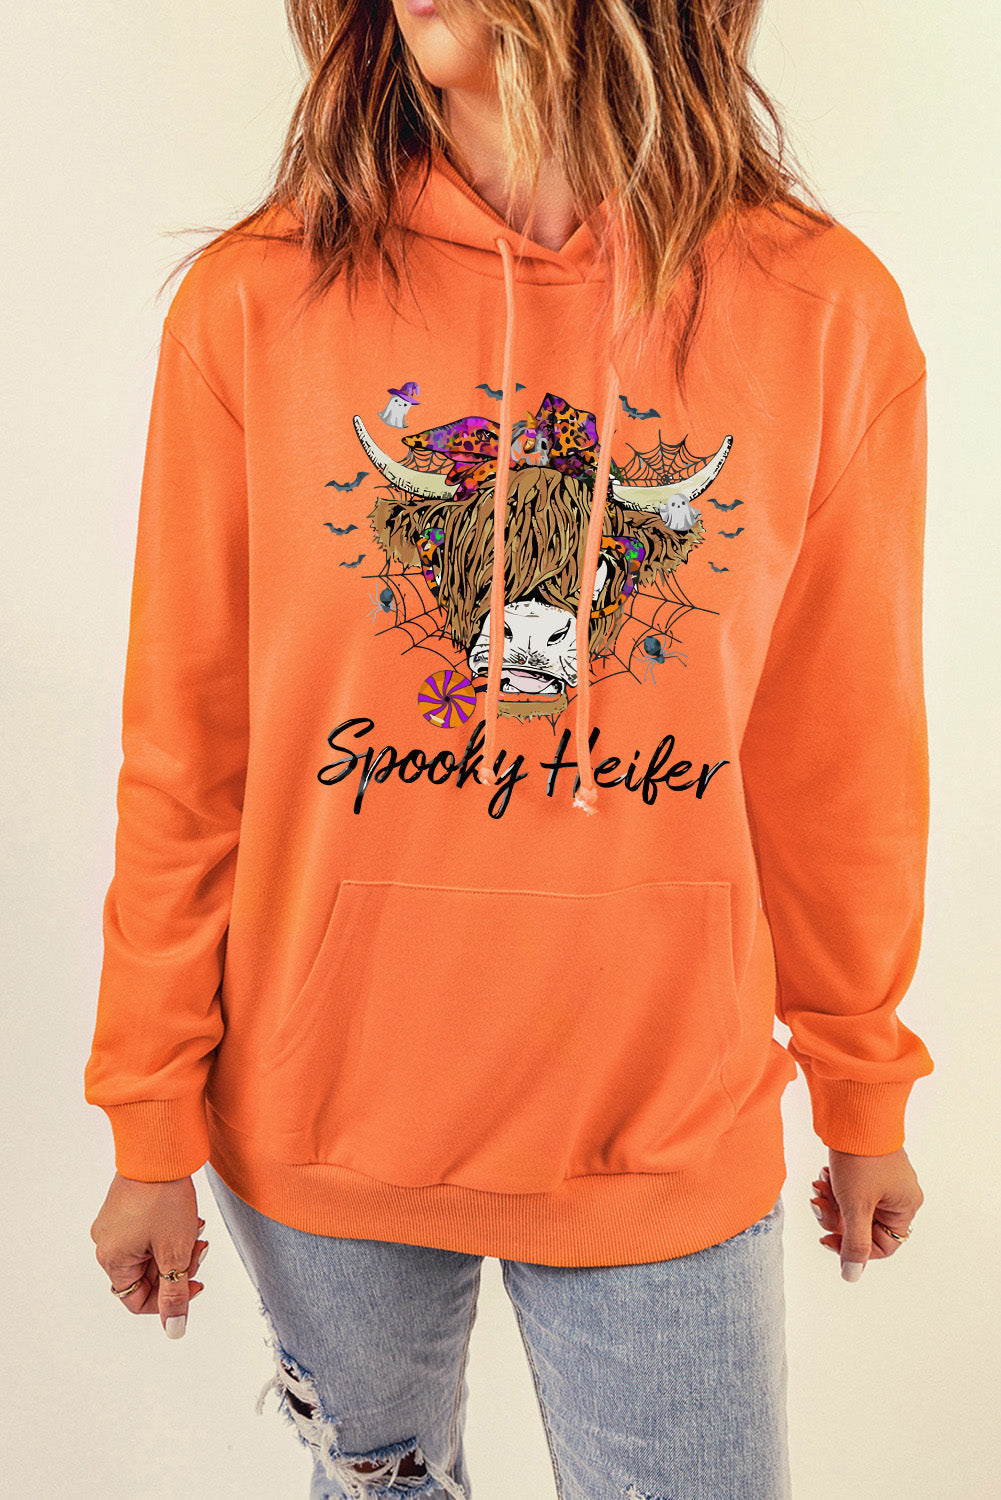 SPOOKY HEIFER Graphic Hoodie - Orange / S - Hoodies & Sweatshirts - Shirts & Tops - 1 - 2024